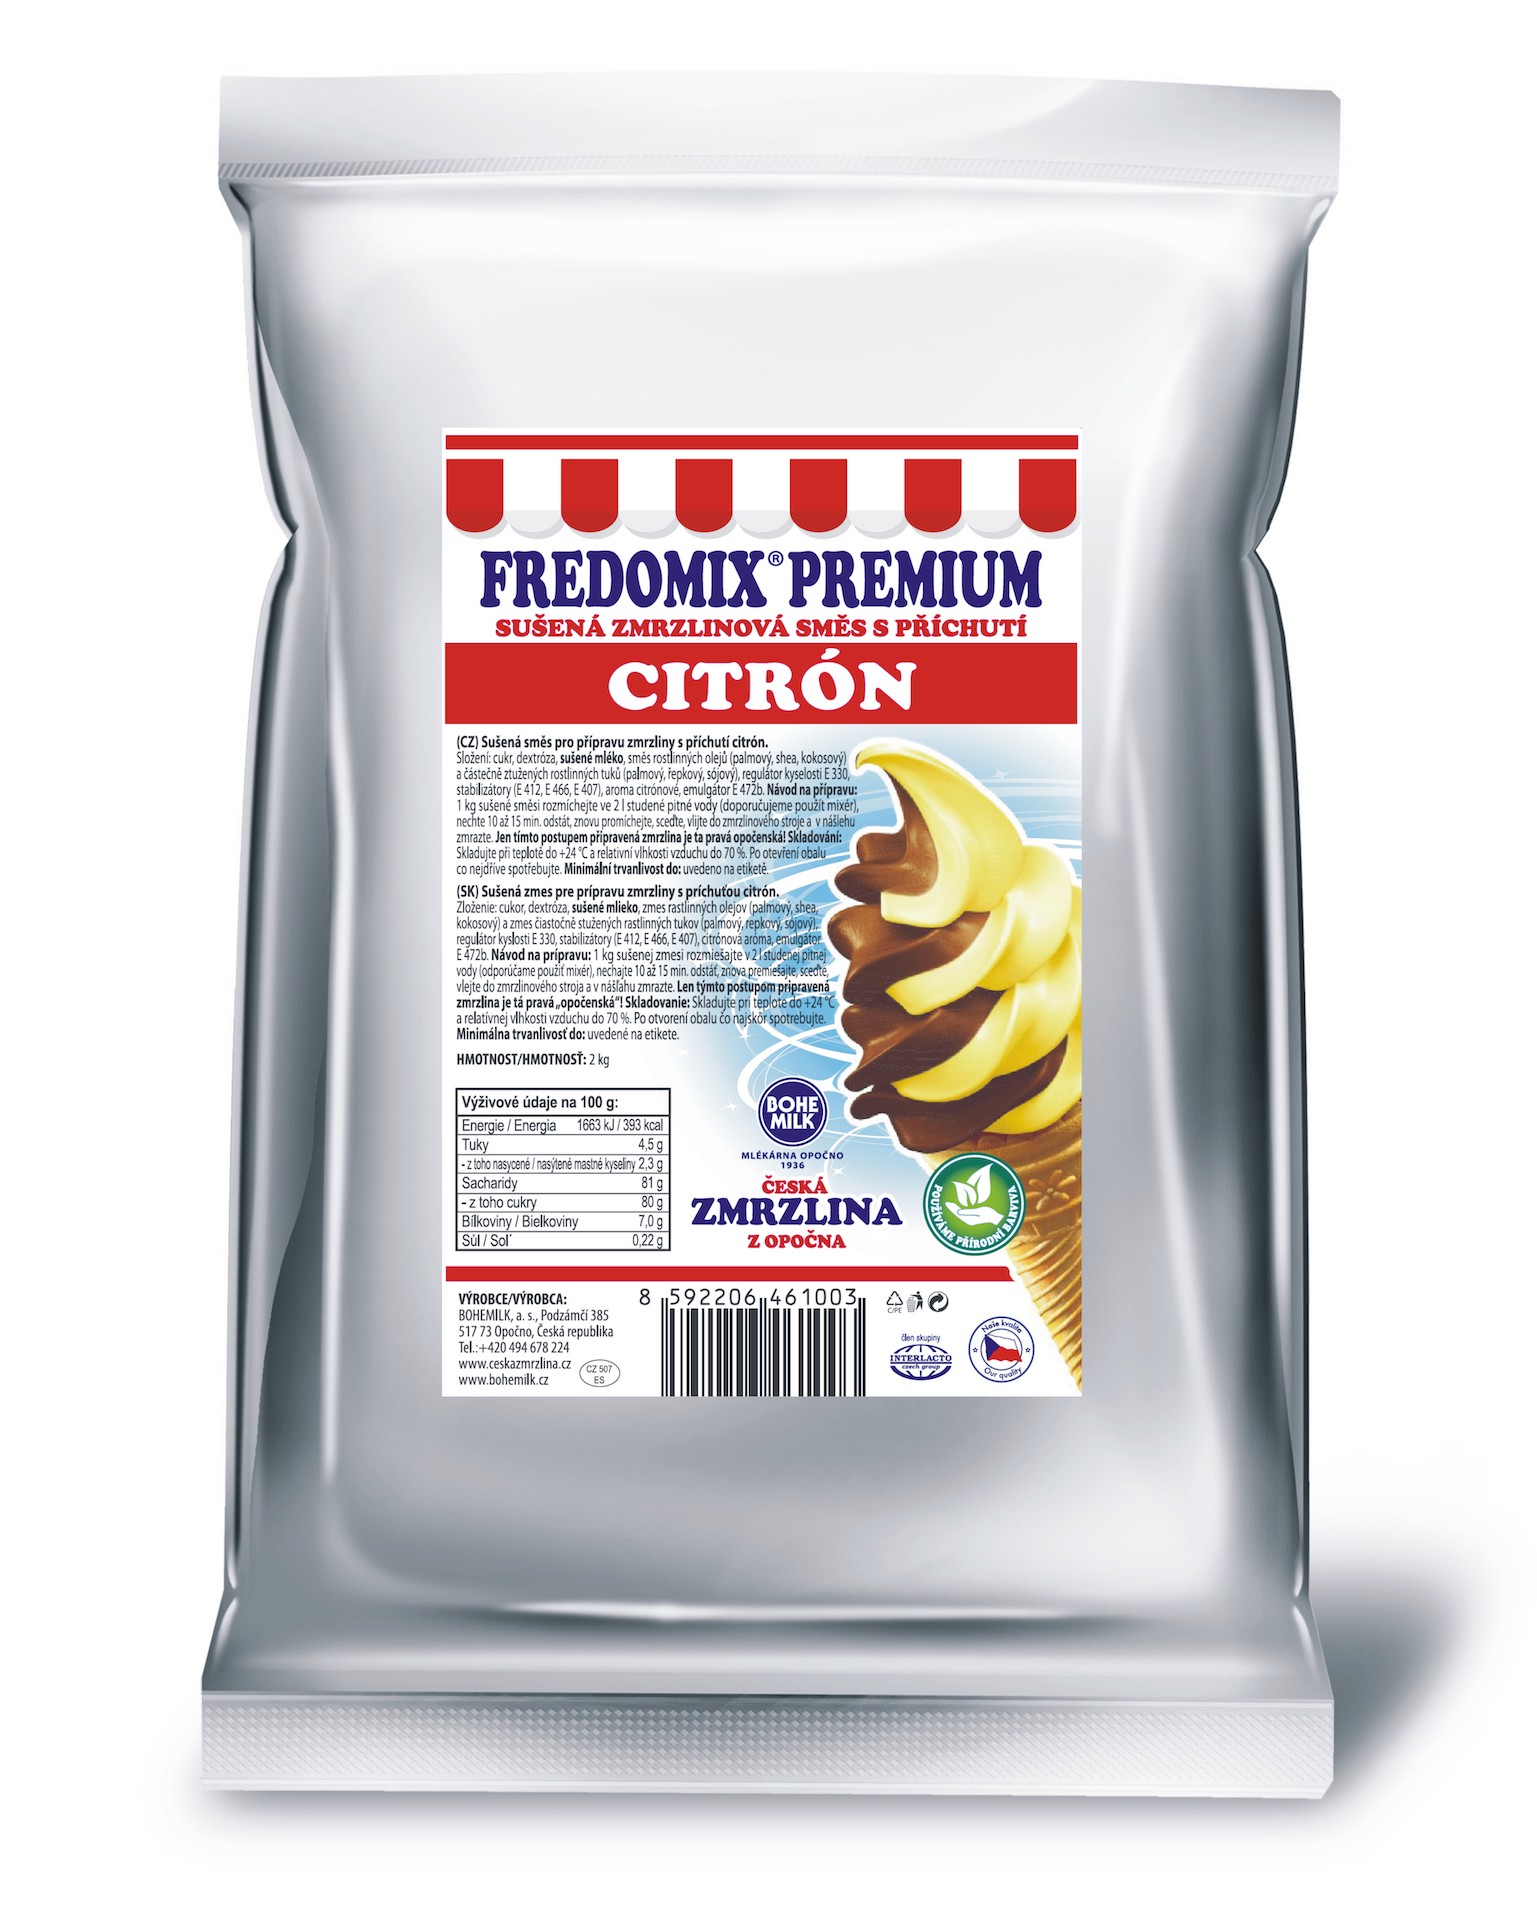 FREDOMIX PREMIUM Citron, 2kg